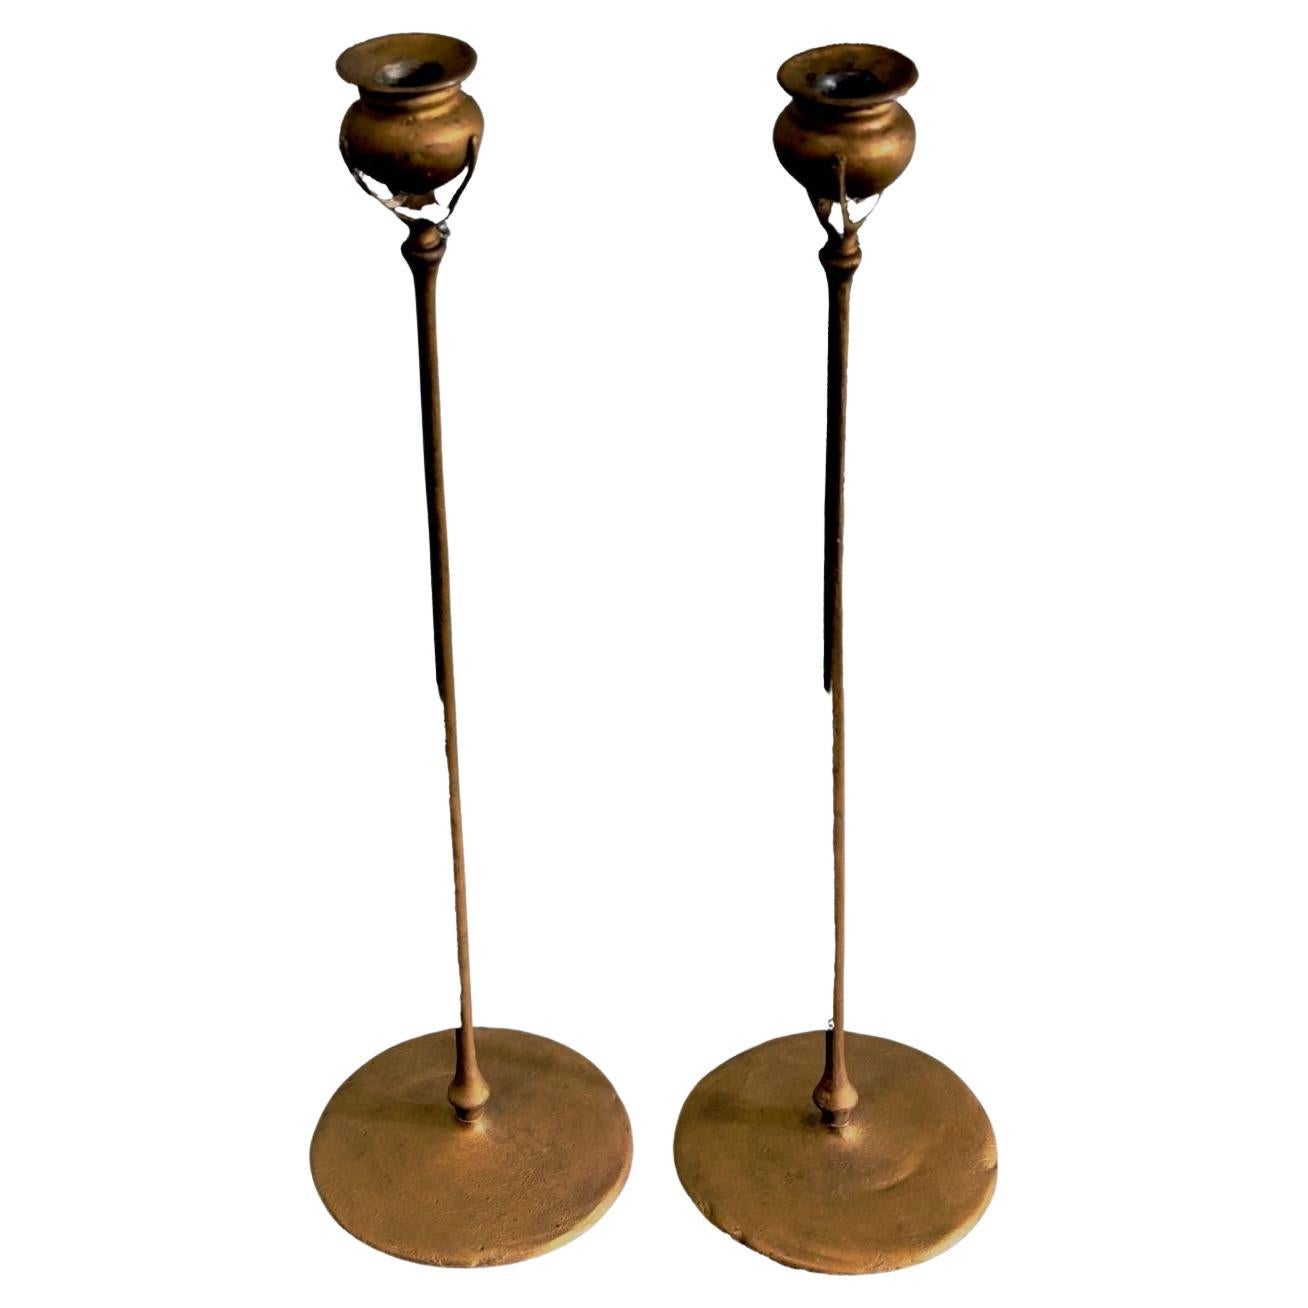 Tiffany Studios New York 1213 chandeliers en bronze doré